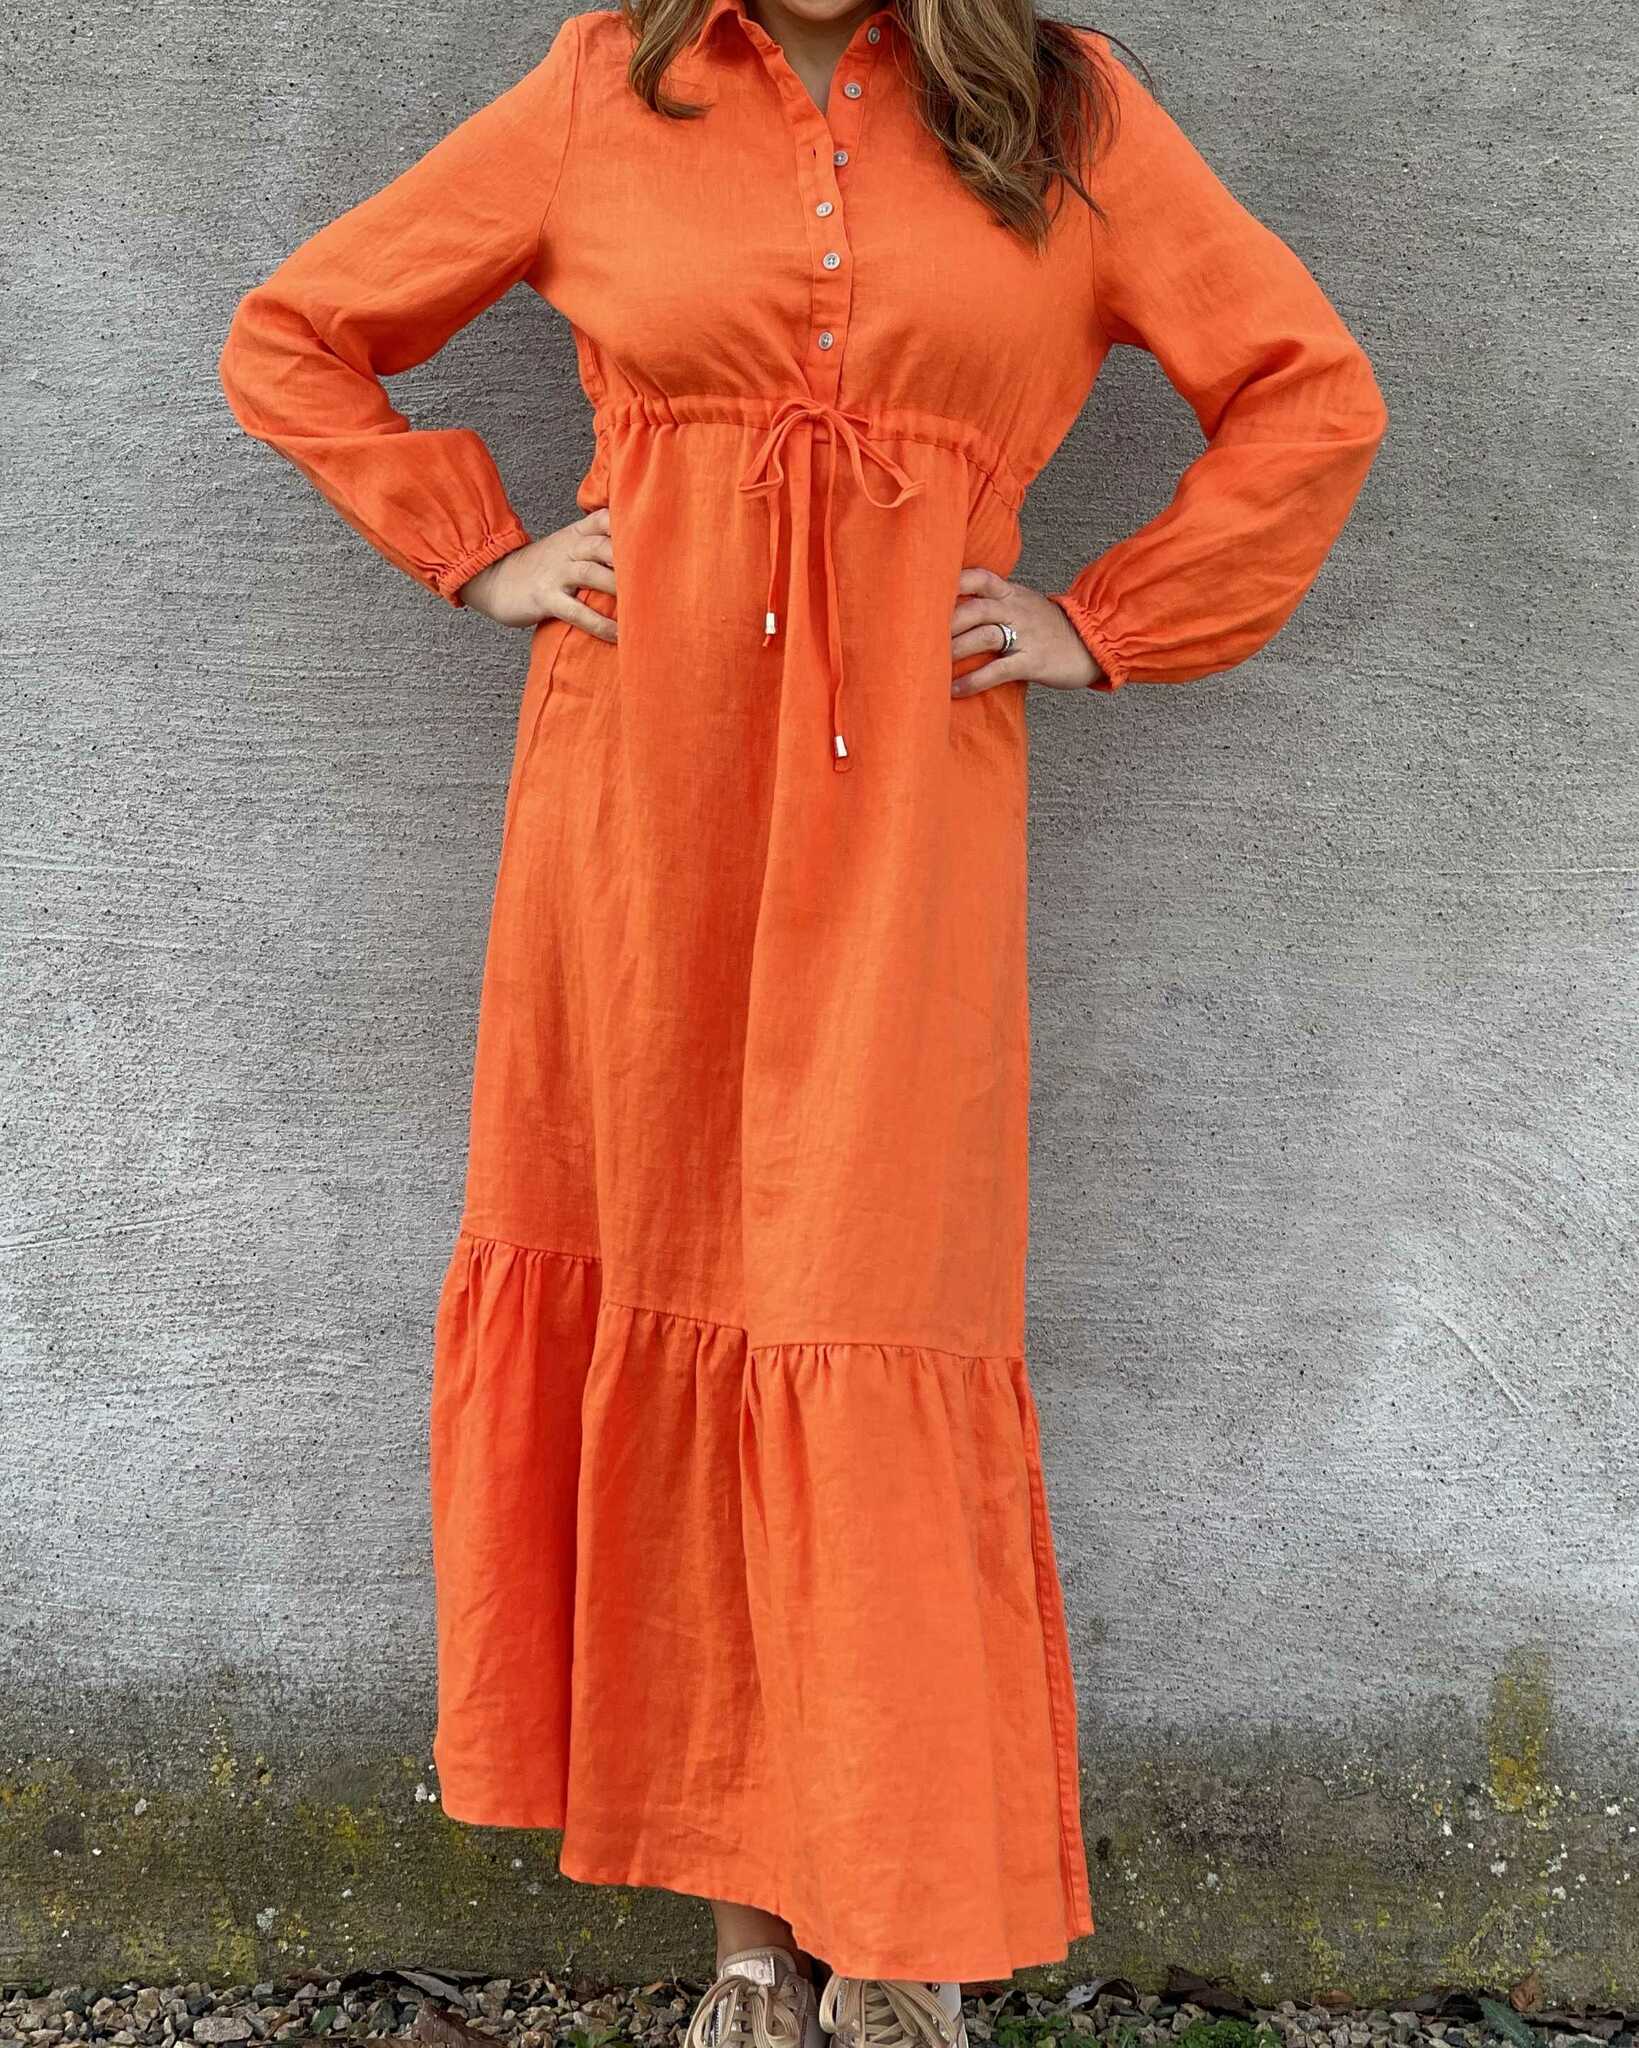 Orange klänning - lång linneklänning bohostil - Läcker linne klänning maxi - Sommarklänning